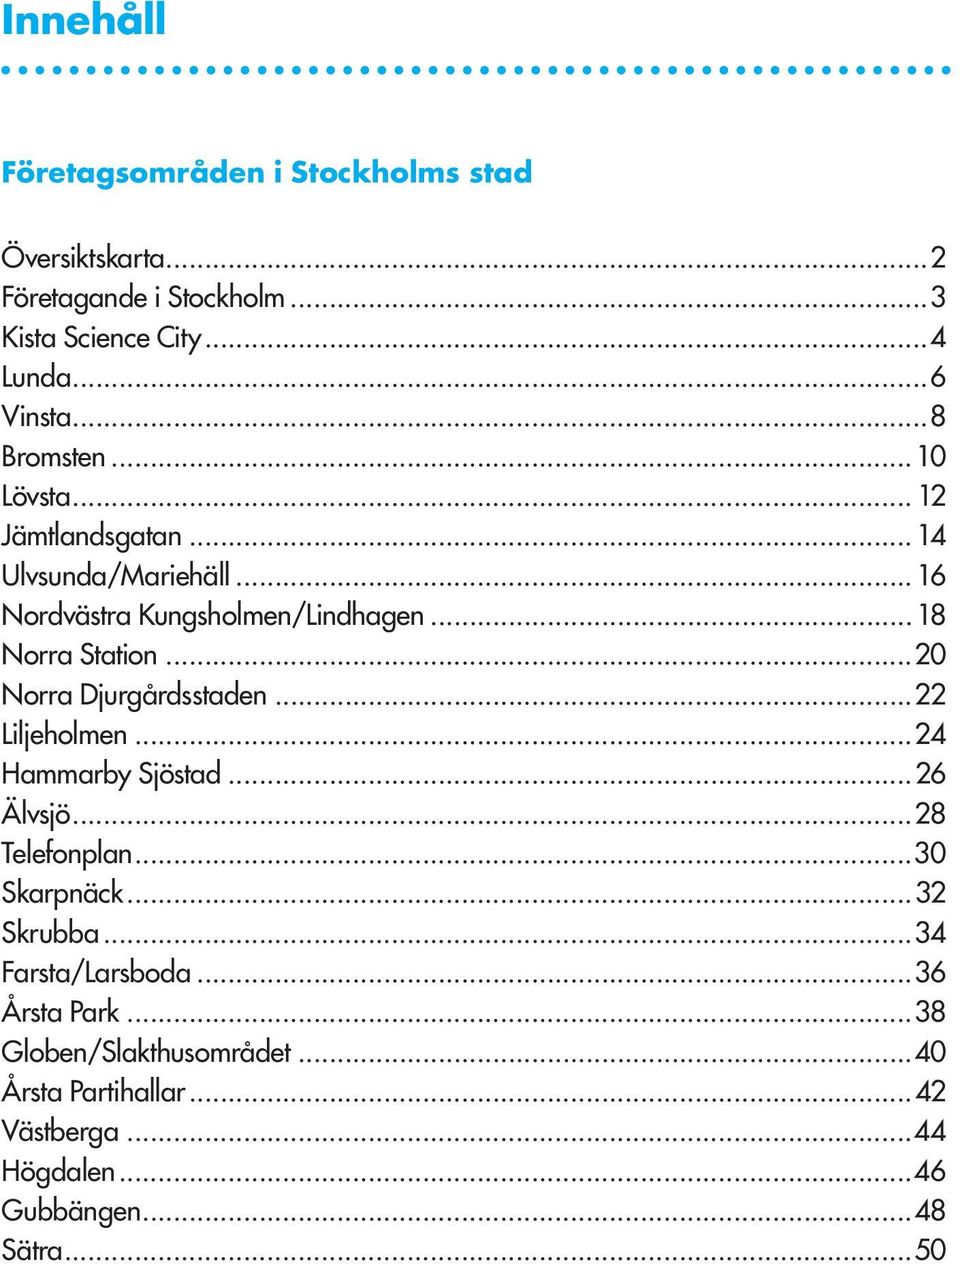 ..20 Norra Djurgårdsstaden...22 Liljeholmen...24 Hammarby Sjöstad...26 Älvsjö...28 Telefonplan...30 Skarpnäck...32 Skrubba.